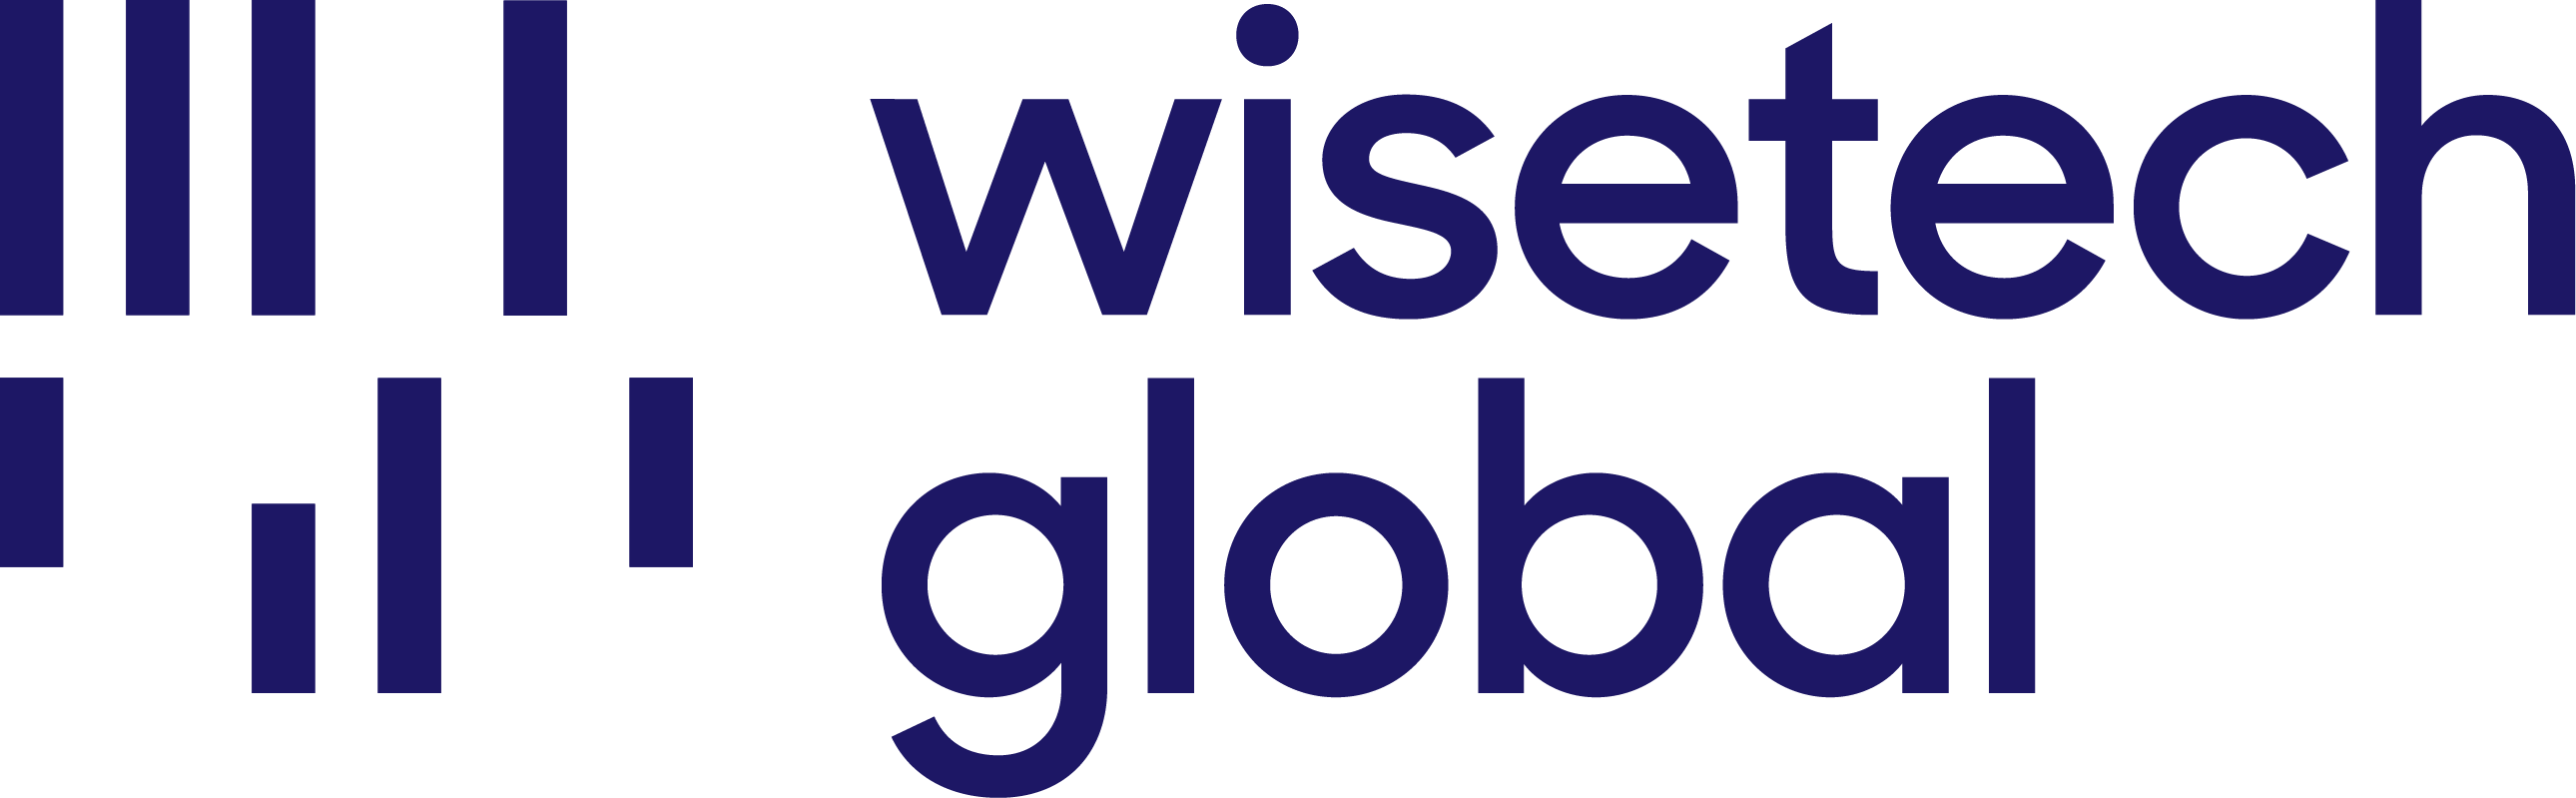 WiseTech Global logo